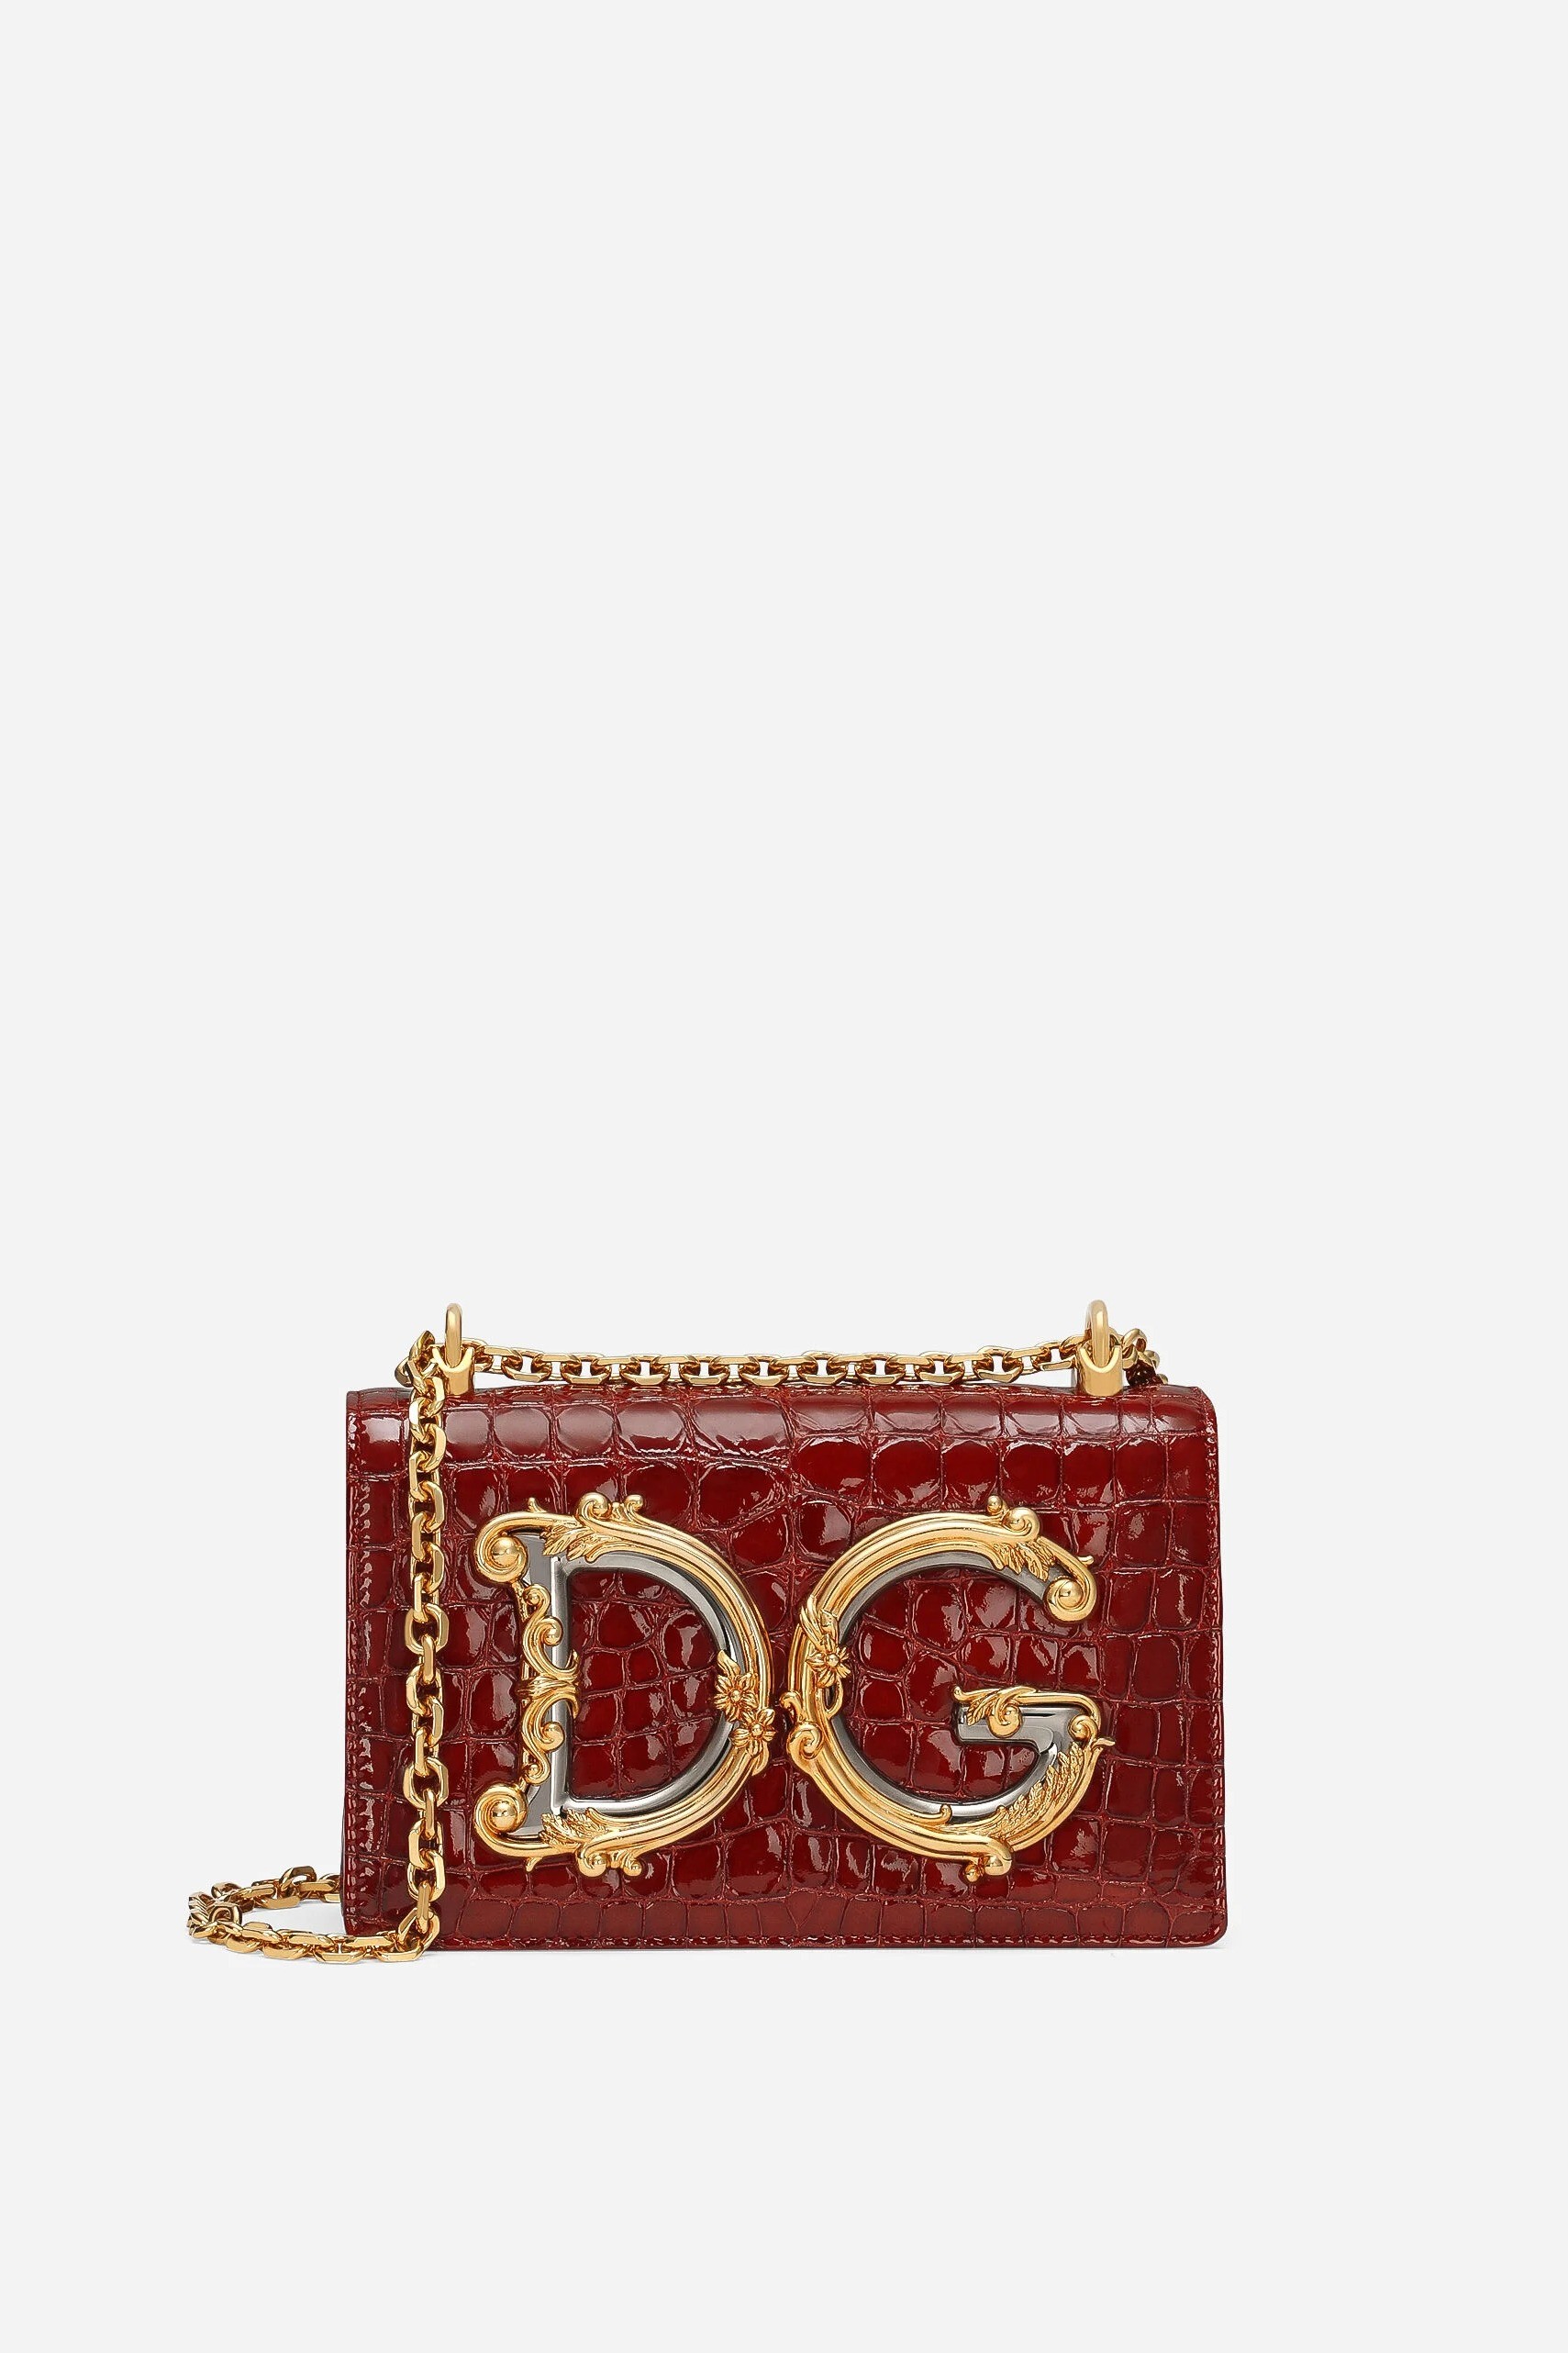 Dolce & Gabbana - MEDIUM DG GIRLS SHOULDER BAG - Red